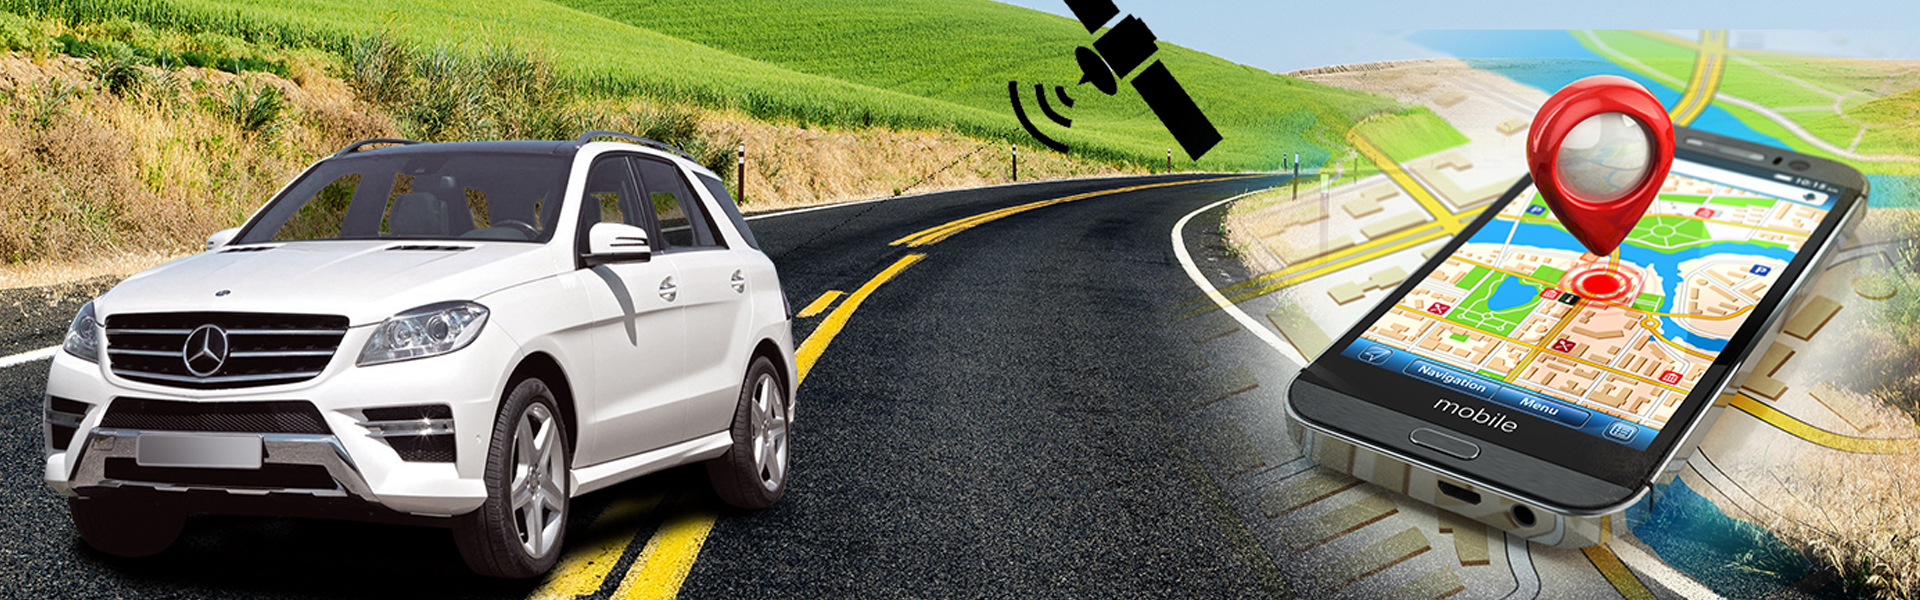 Слежение за машиной. GPS мониторинг автомобиля. GPS для автомобиля. GPS Tracker car. Автомобиль легковой GPS мониторинг.